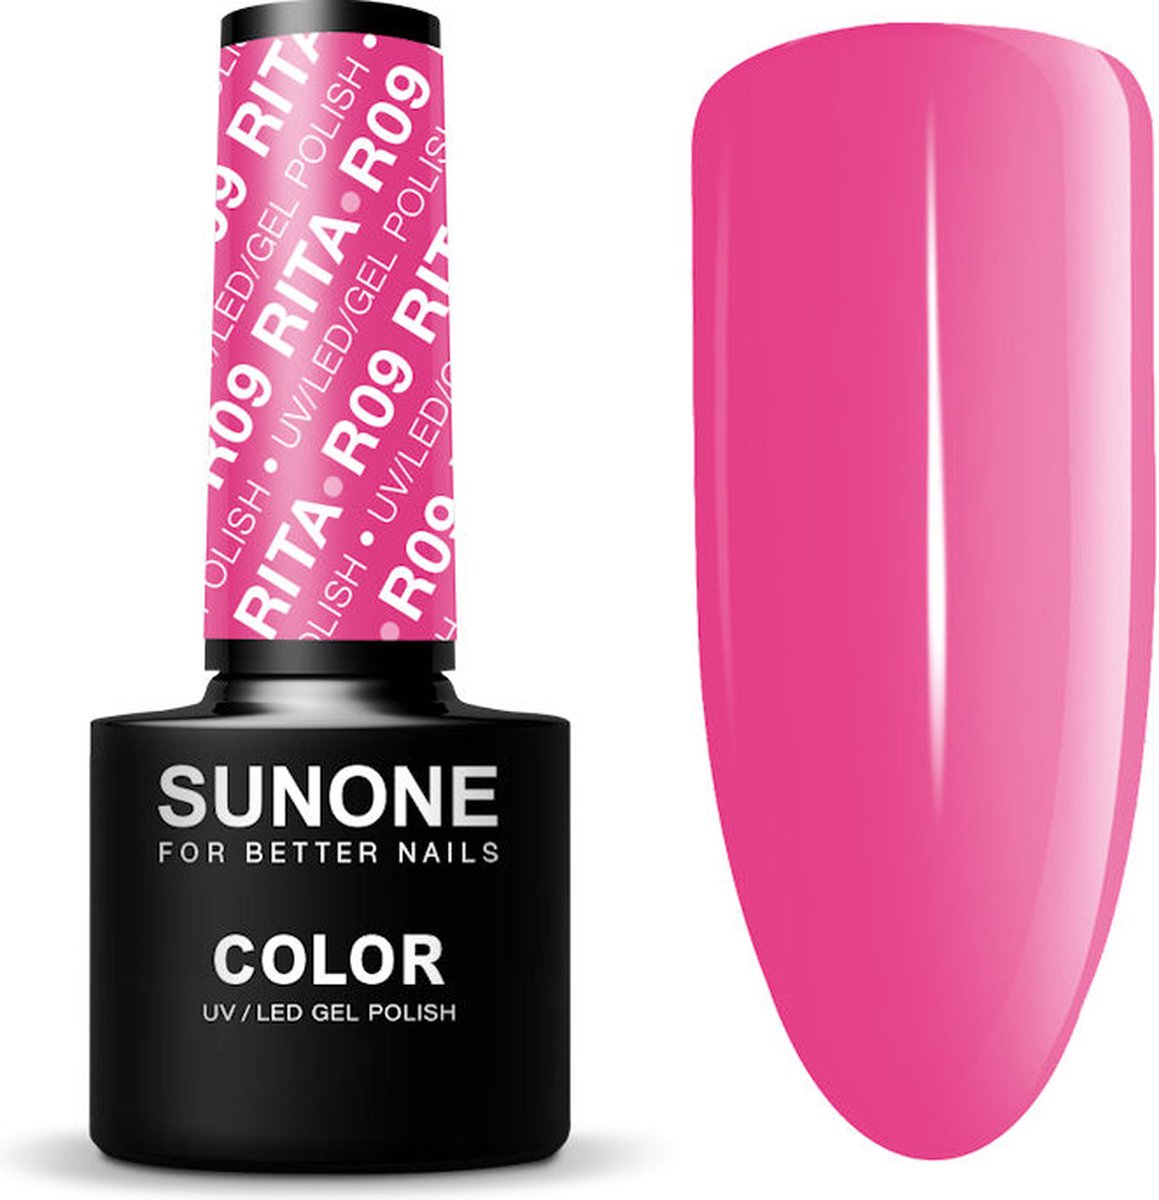 Sunone - UV/LED Gel Polish Color lakier hybrydowy R09 Rita 5ml